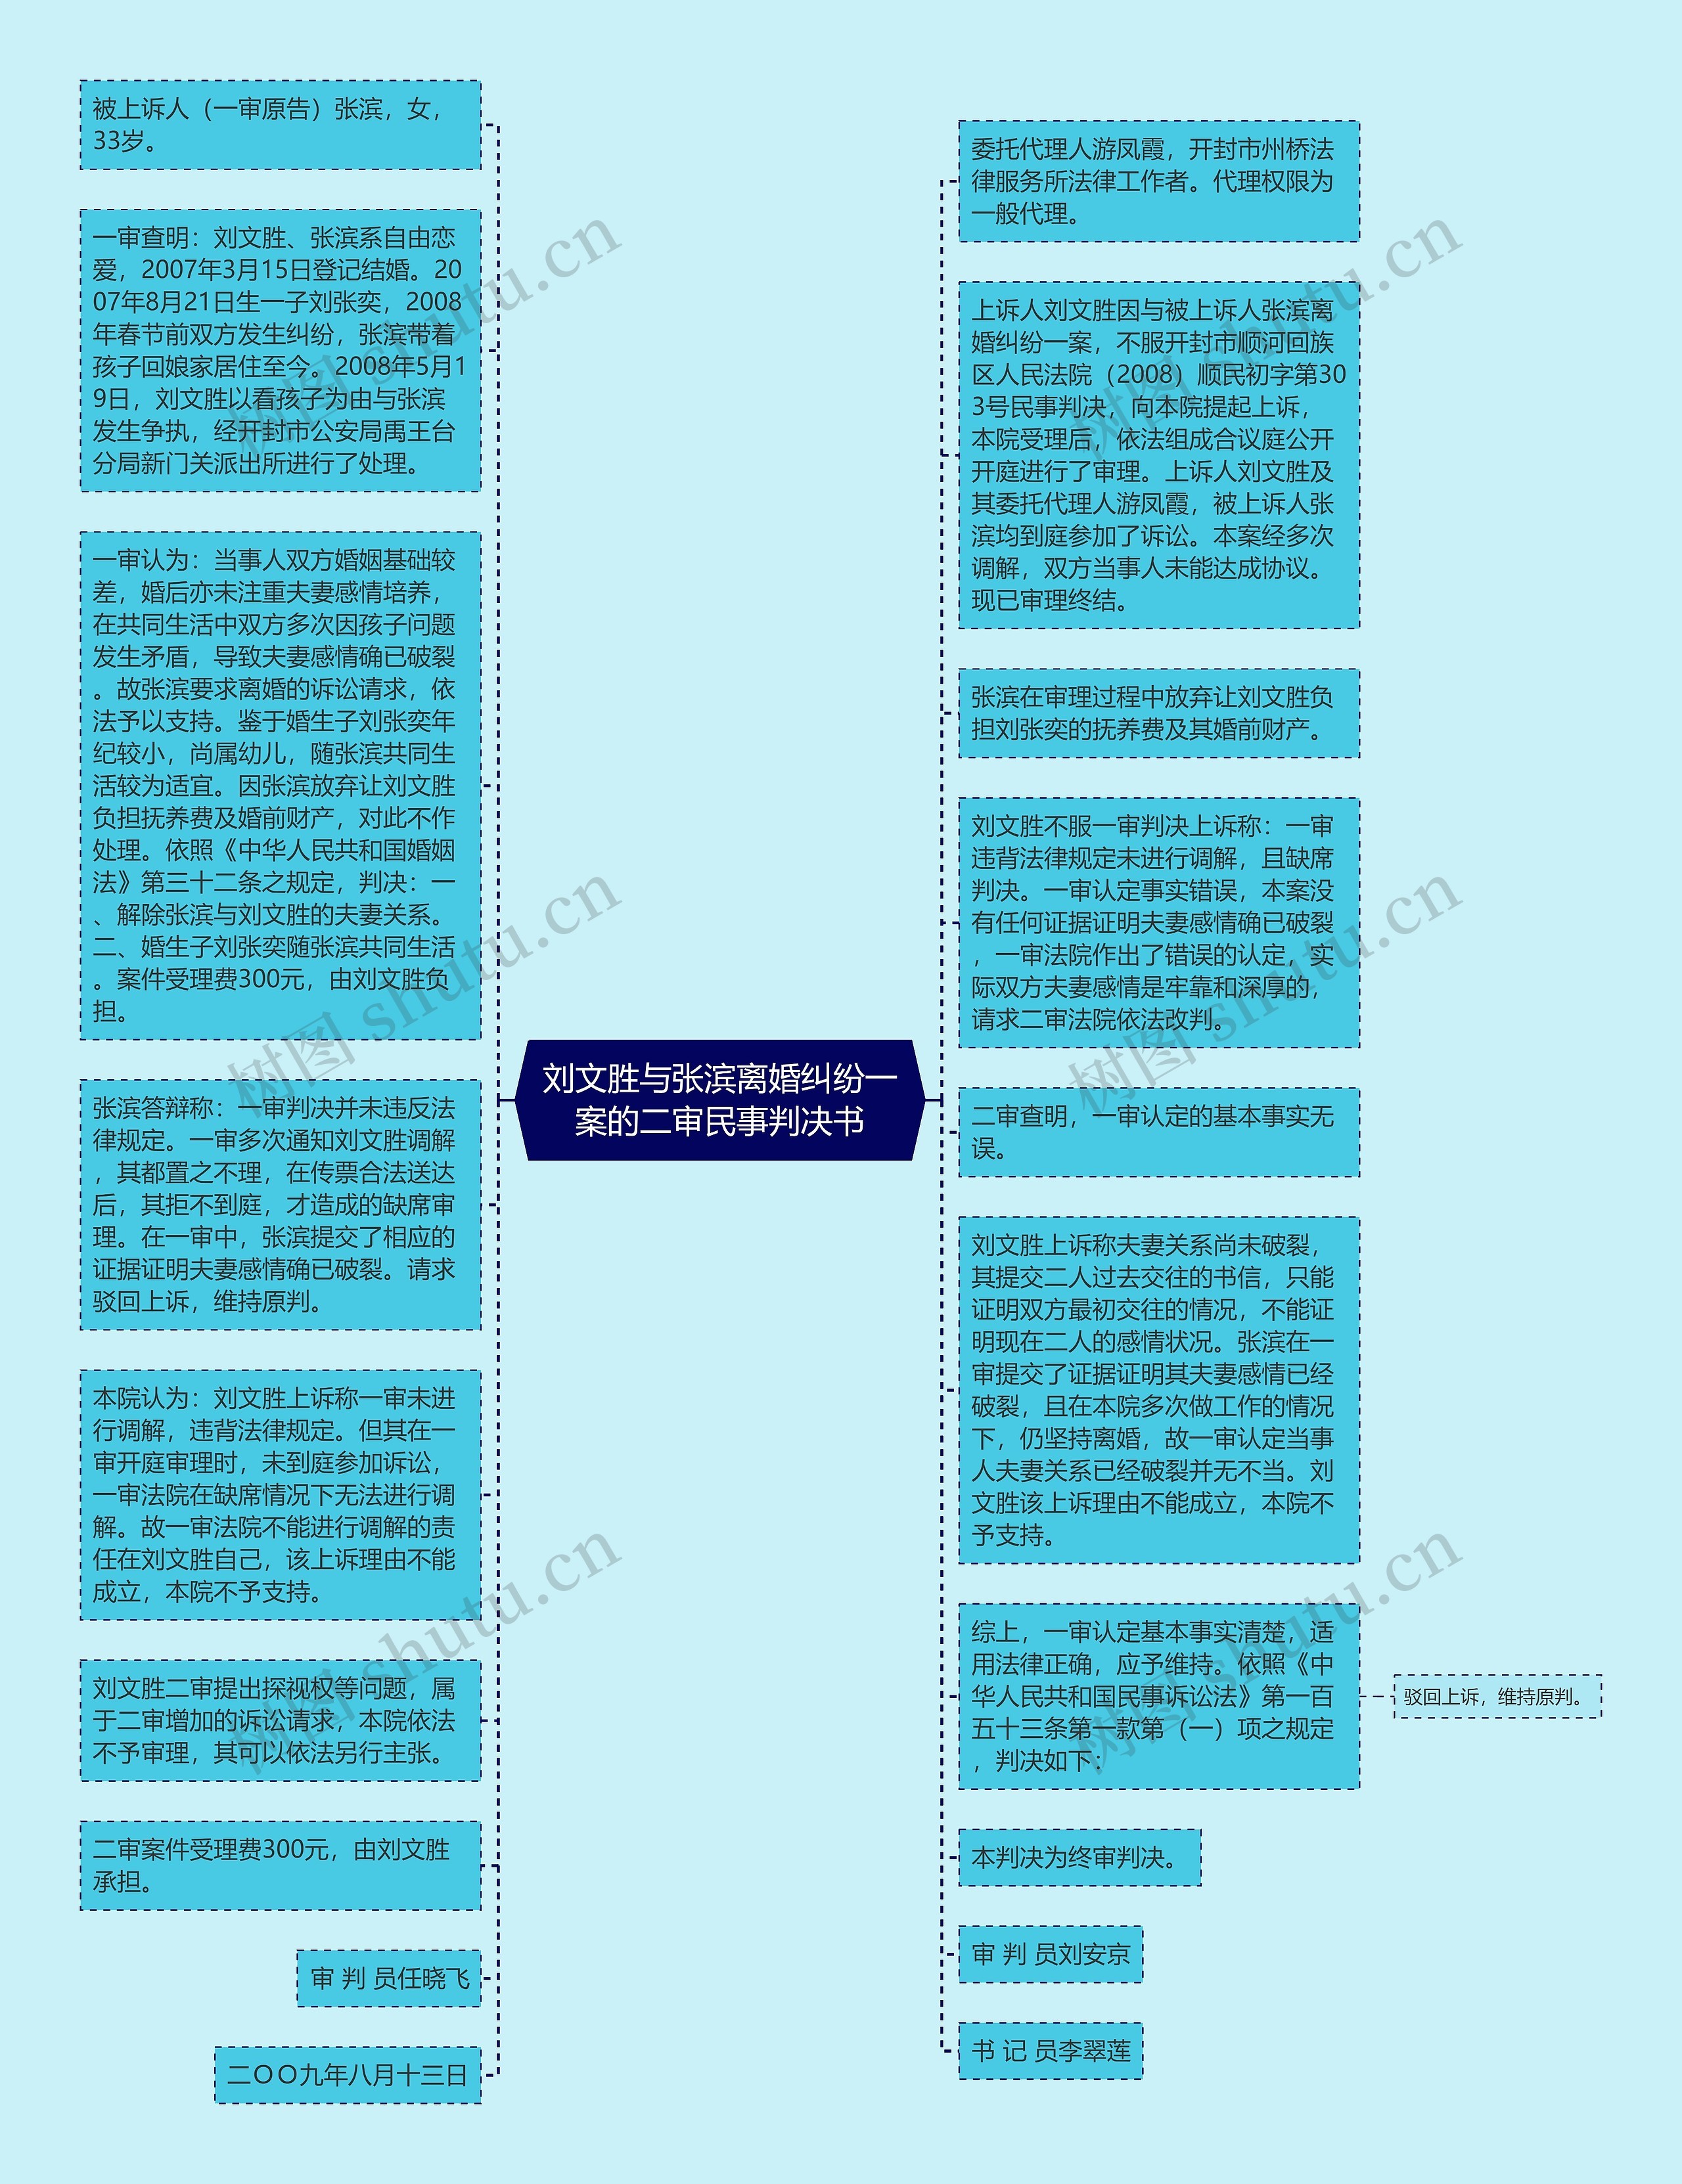 刘文胜与张滨离婚纠纷一案的二审民事判决书思维导图